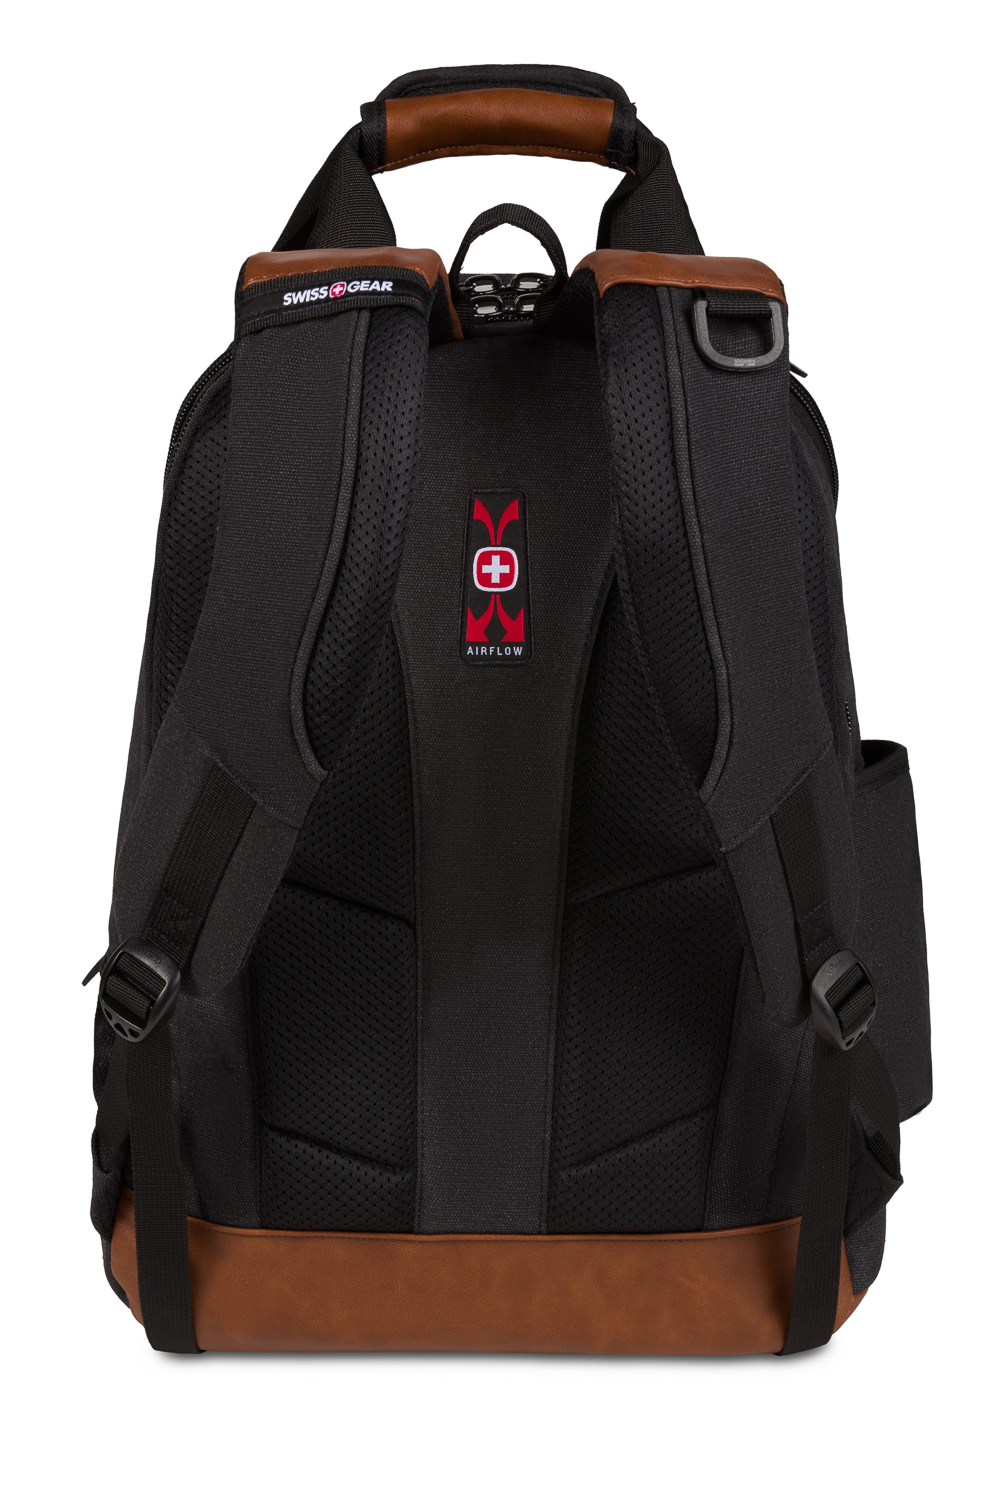 Swissgear 2767 Work Pack Tool Backpack - Canvas Black Brown